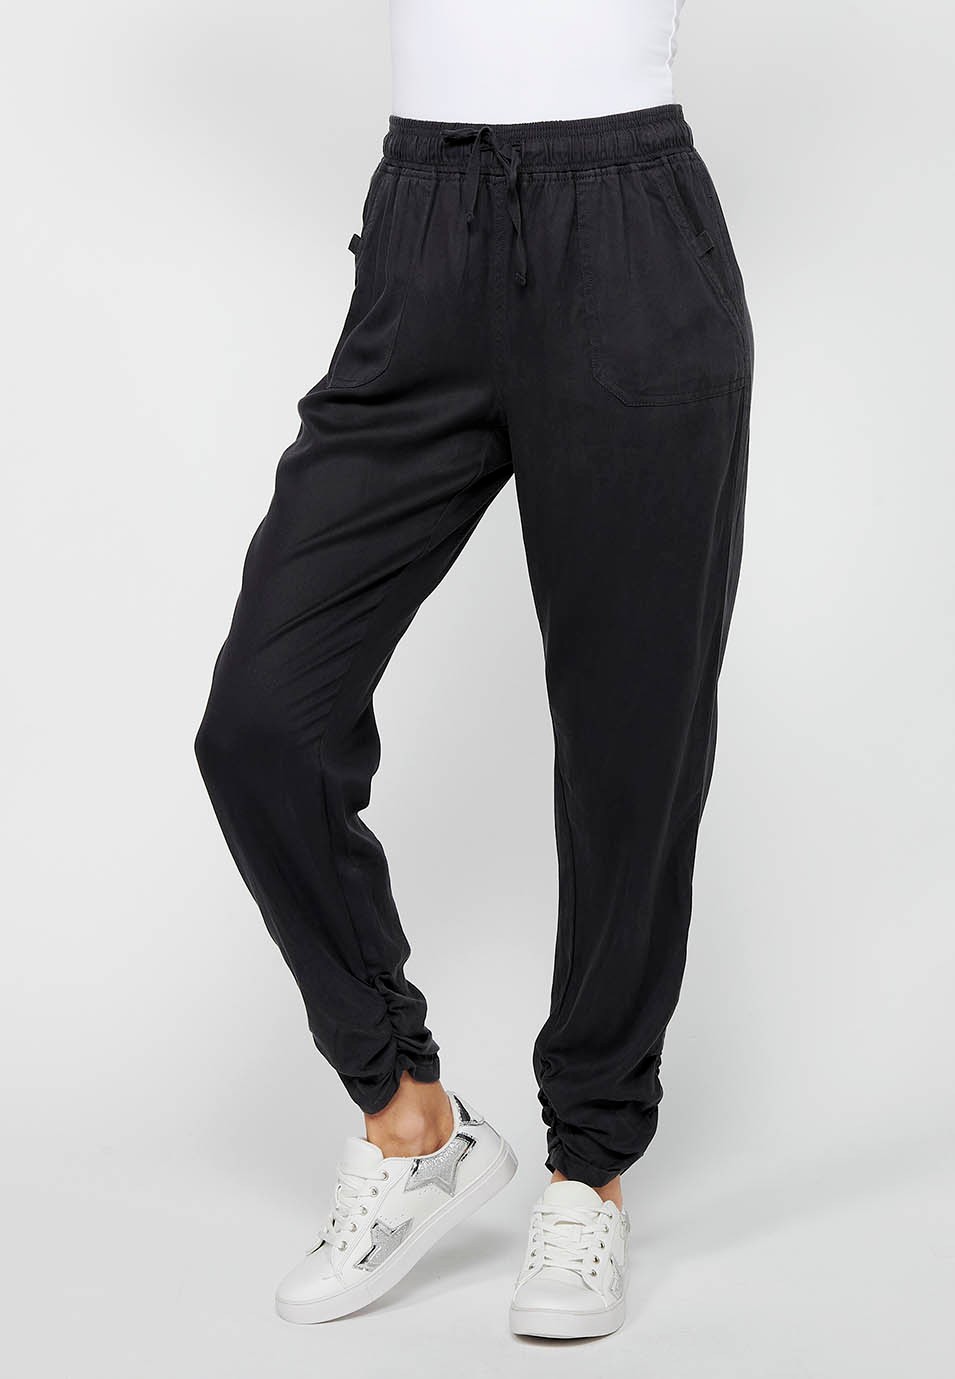 Pantalón largo jogger con Acabado rizado y Cintura engomada con Cuatro bolsillos, dos traseros con solapa de Color Negro para Mujer 2